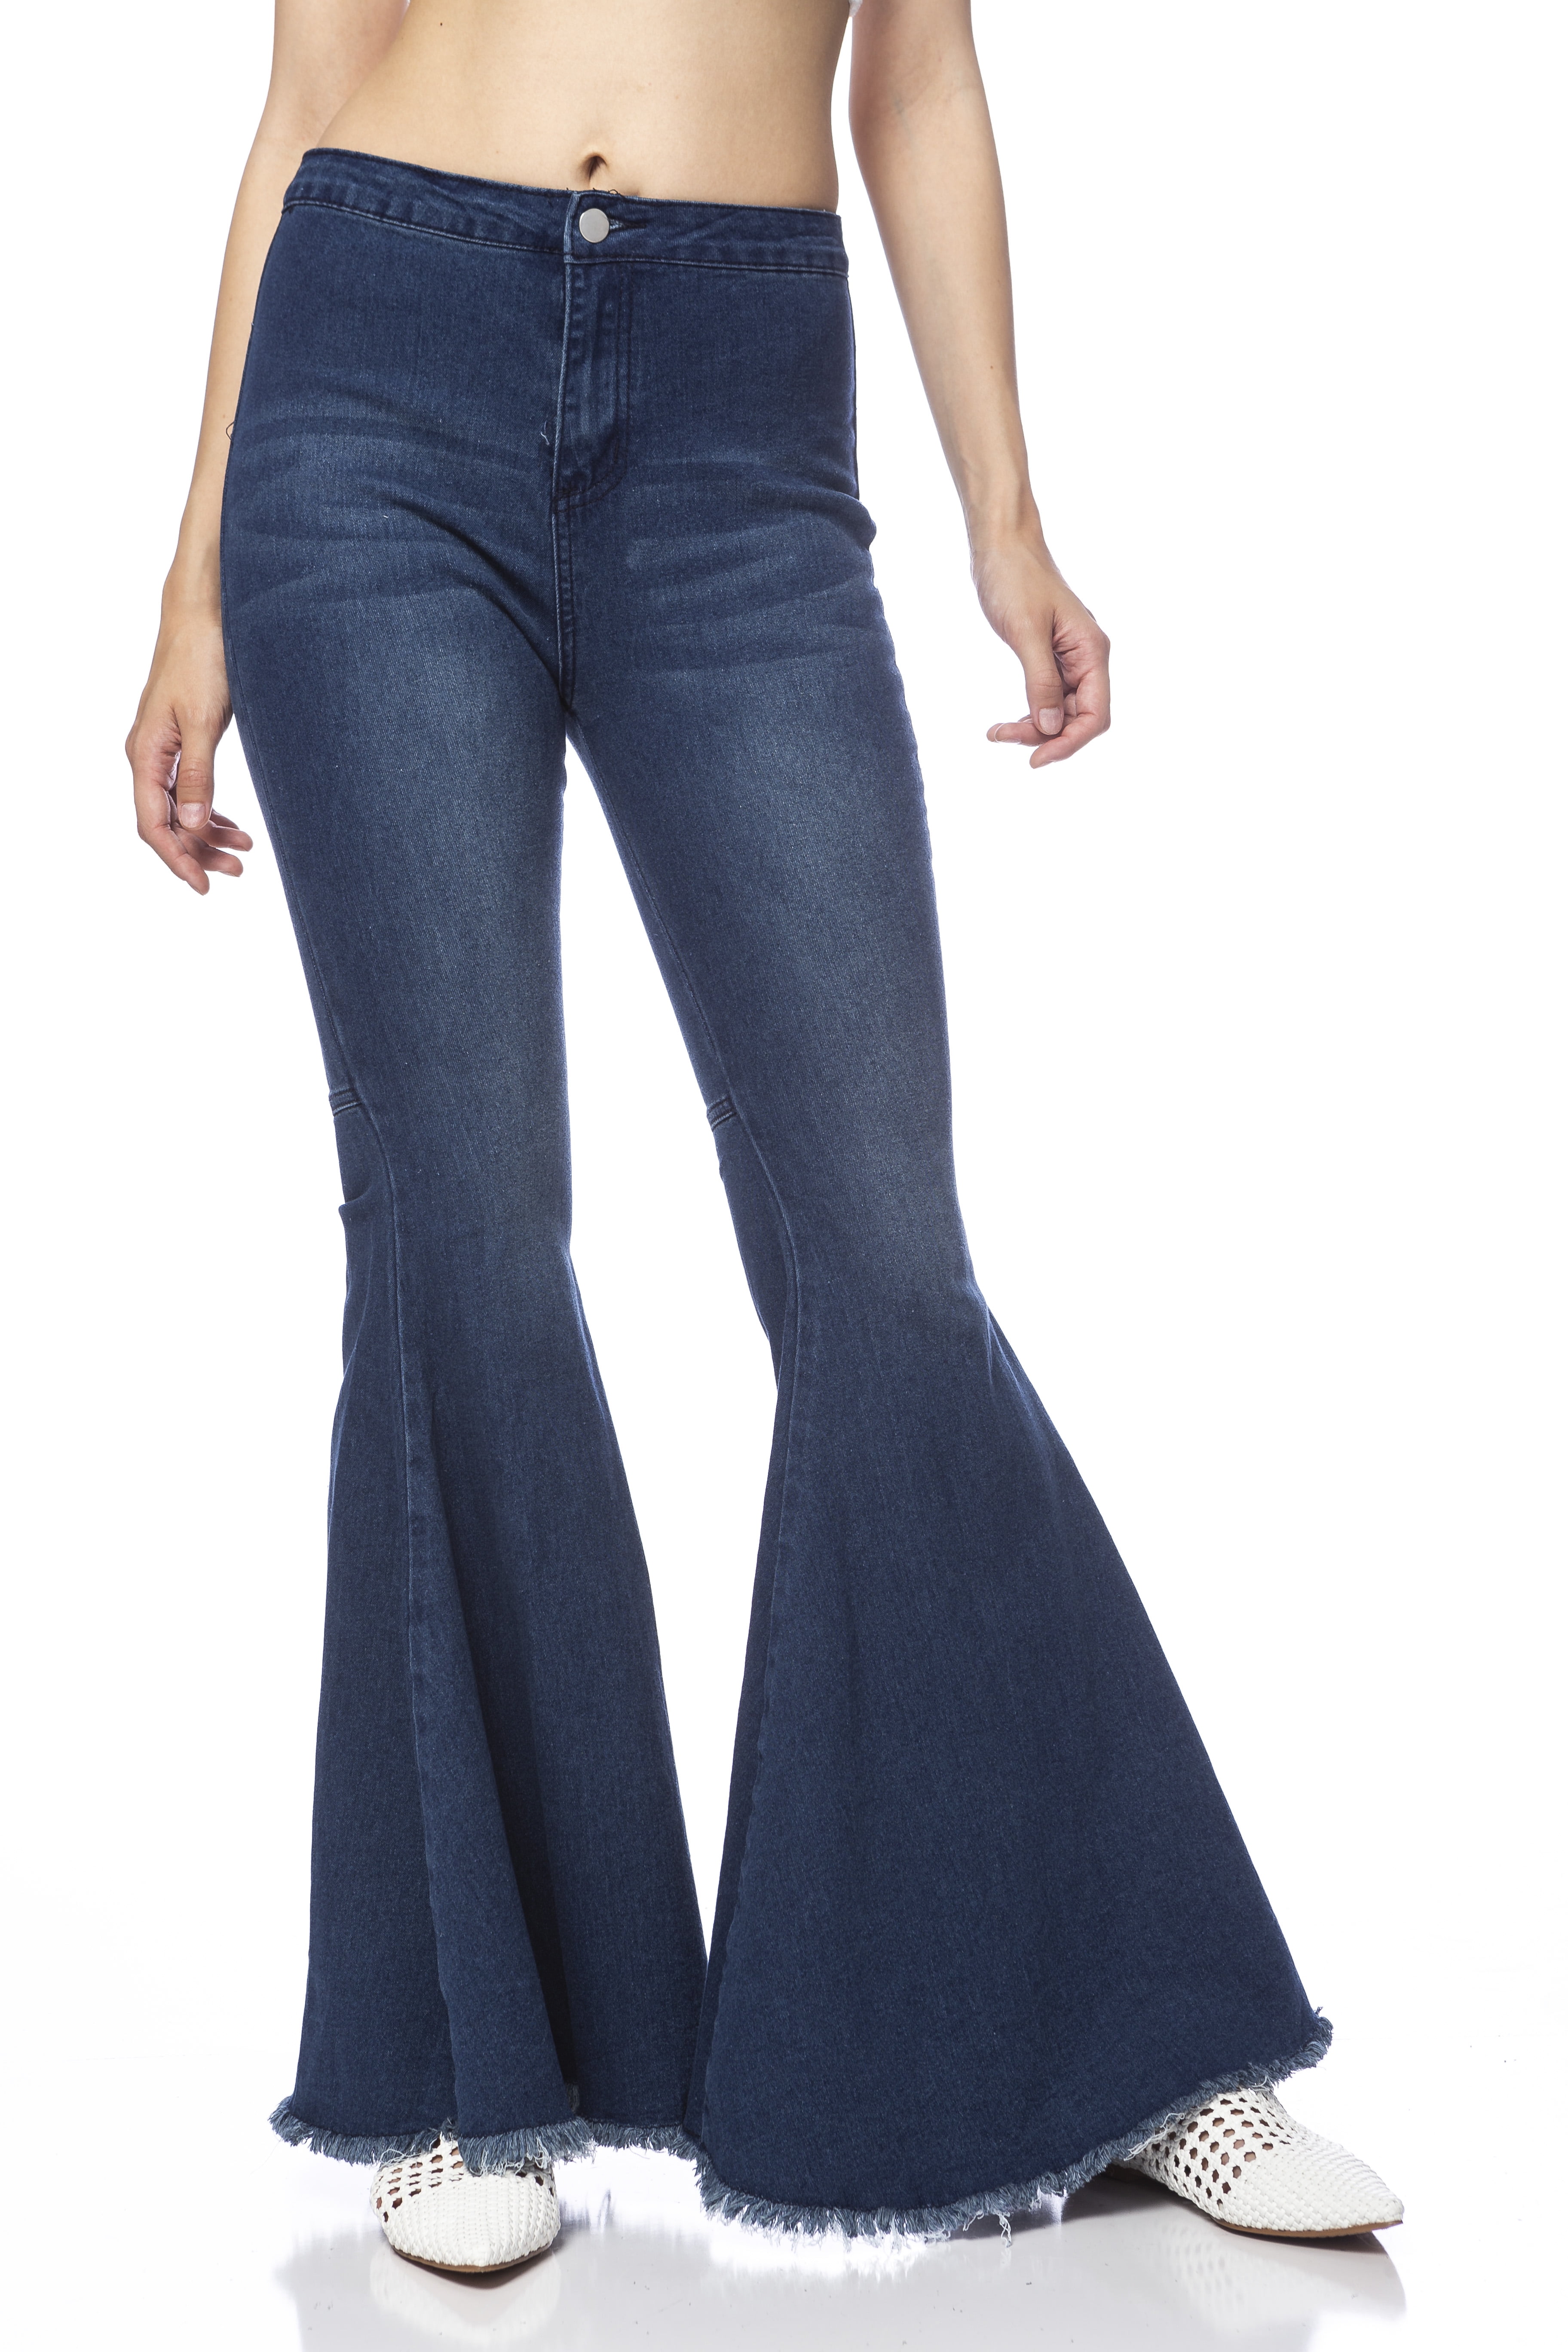 Women's Classic Retro High Waist Long Denim Bell Bottom Jeans